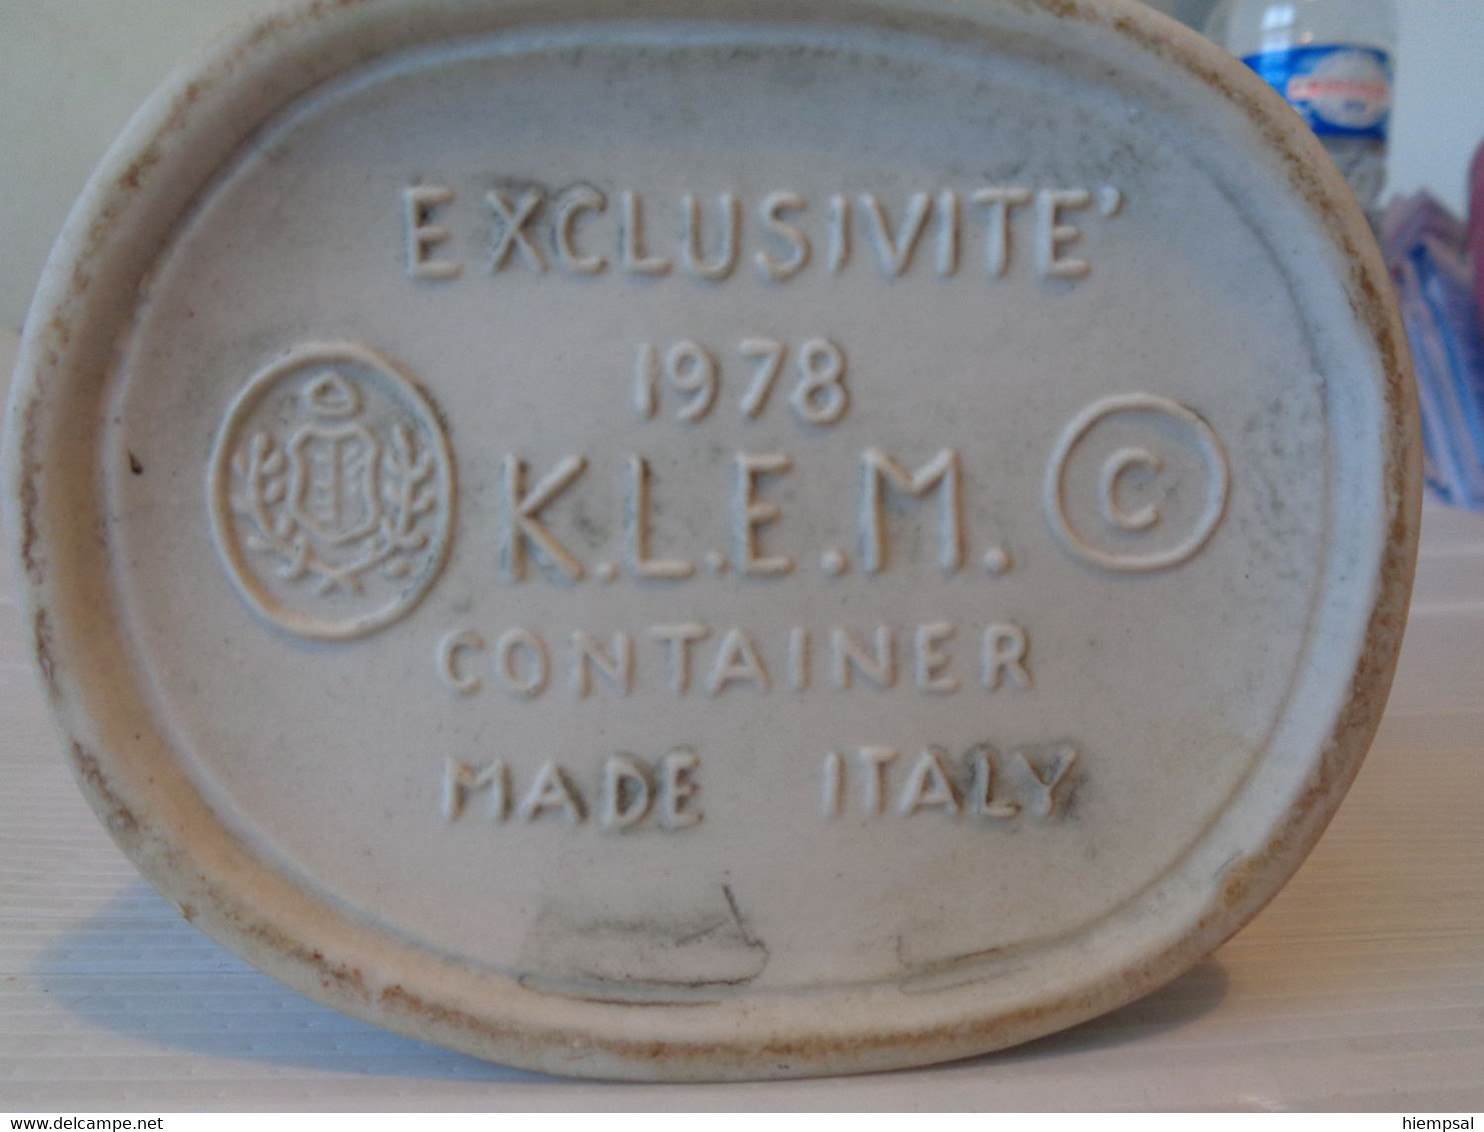 Rès Belle Bouteille Pour  Liqueurs De La Marque .K .L .E .M  MADE ITALY EXCLUSIVITE  1978  Ht  31 Cms - Spiritueux